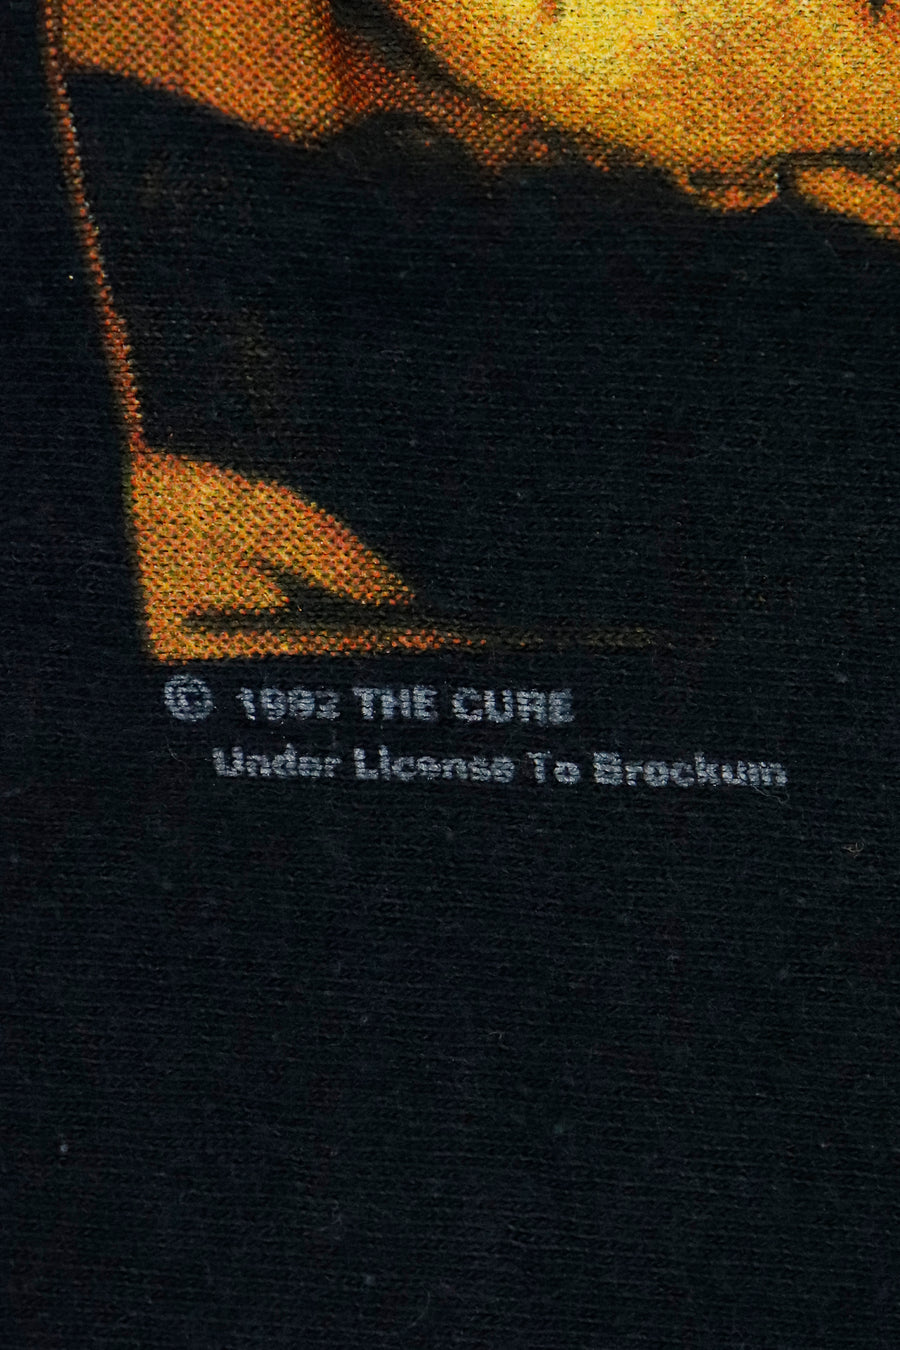 Vintage 1992 The Cure Vinyl Member Portrait T Shirt Sz L